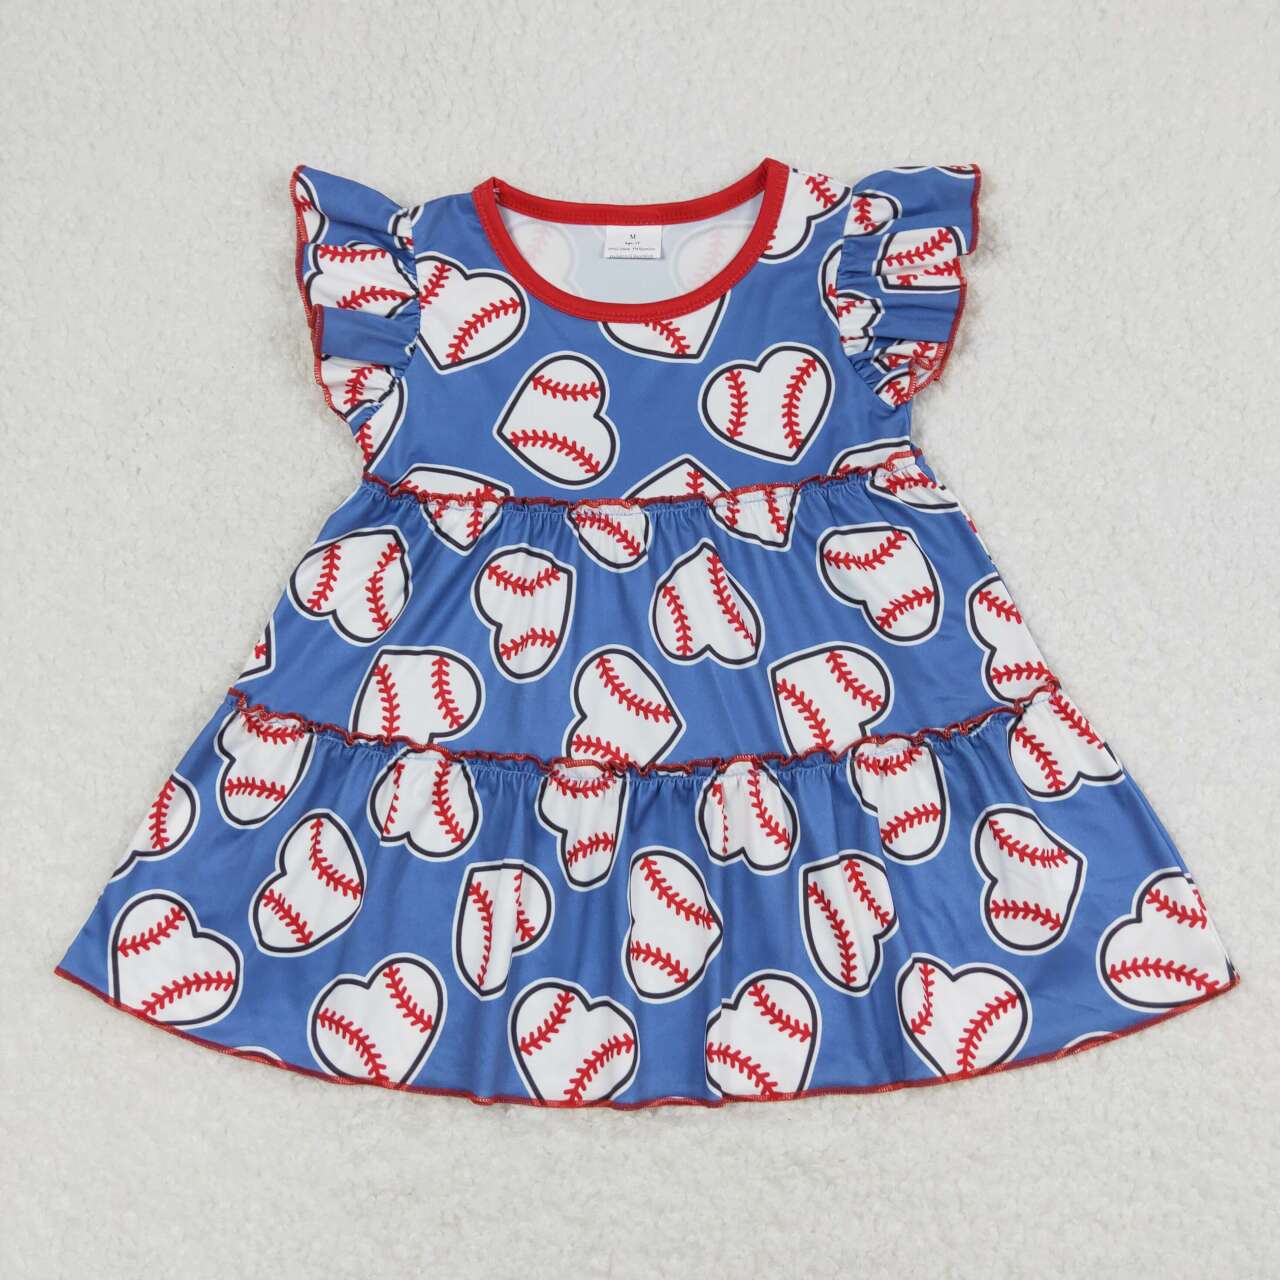 GT0483  Baseball Print Girls Summer Tee Shirts Top